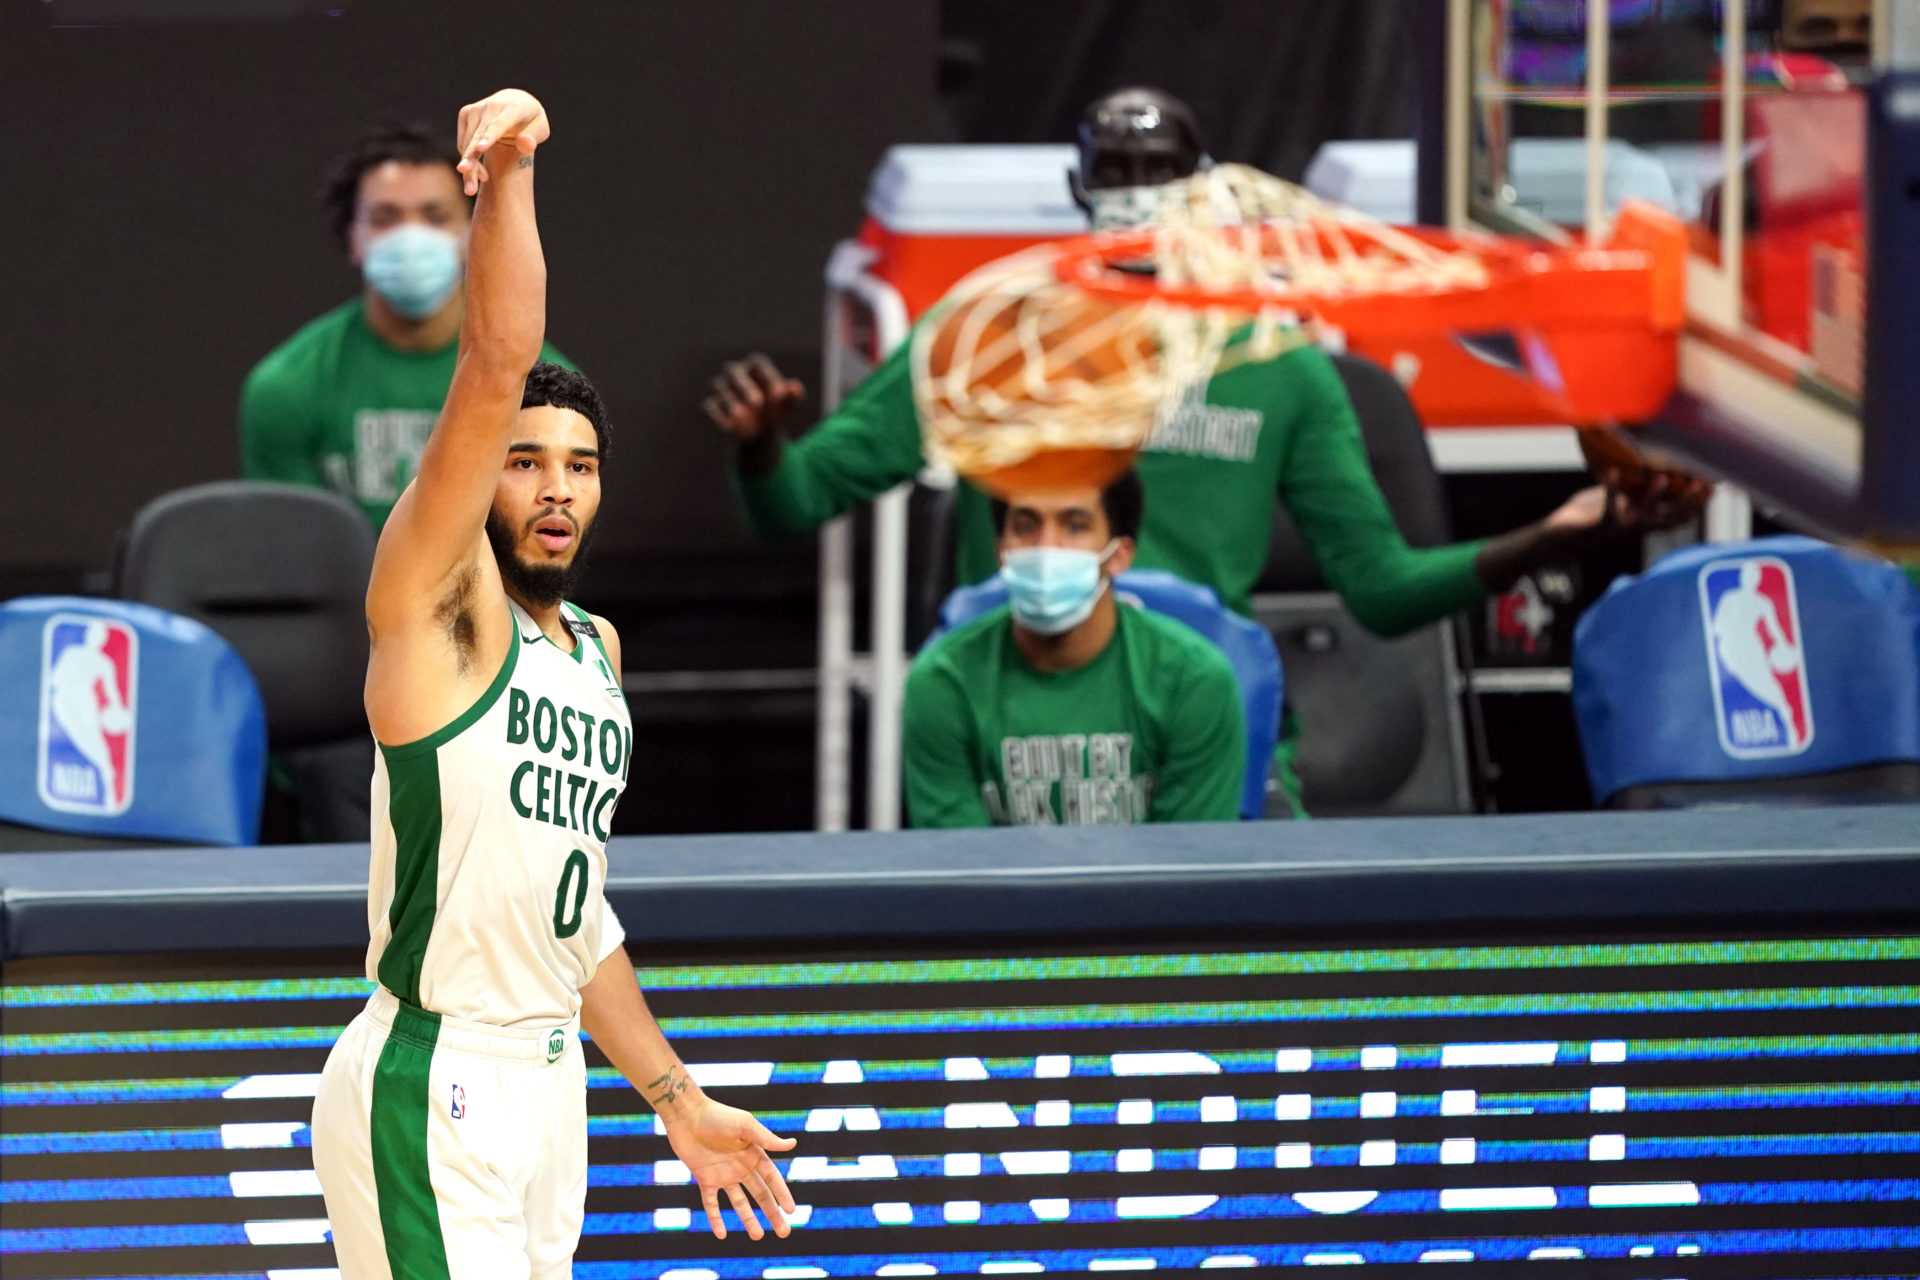 Jayson Tatum jouera-t-il ce soir?  Boston Celtics vs Sacramento Kings: mises à jour sur les blessures, alignements et prévisions